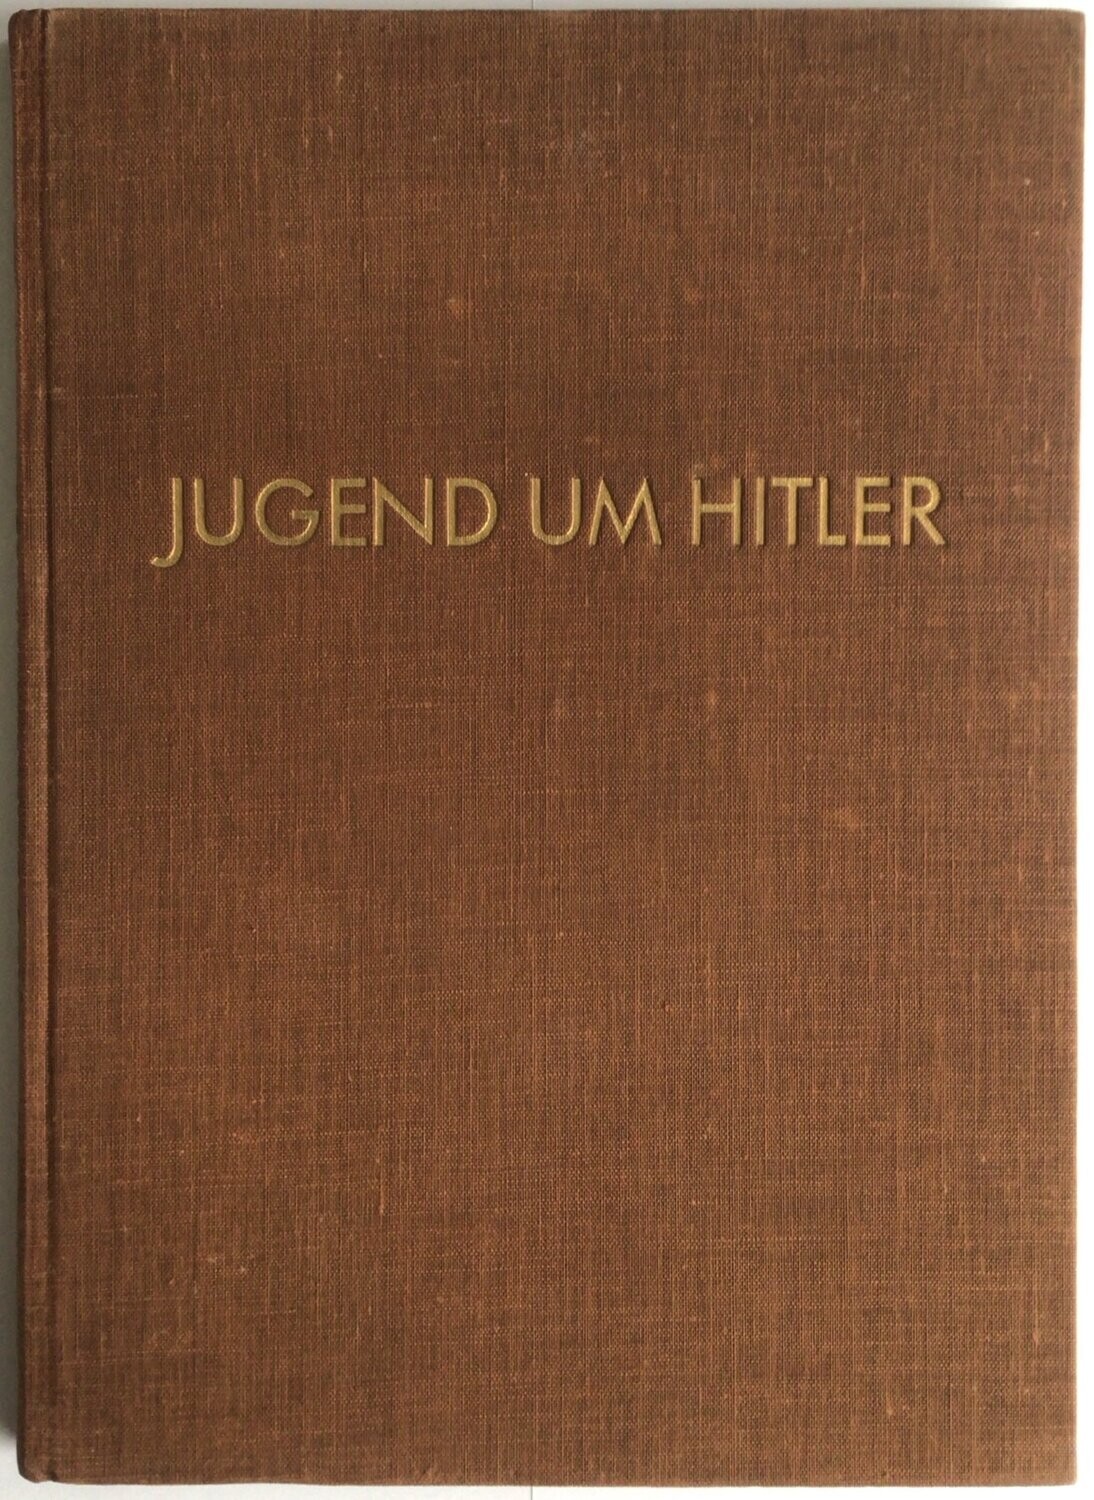 Hoffmann-Bildband: Jugend um Hitler - Ganzleinenausgabe (Erstauflage) aus 1934